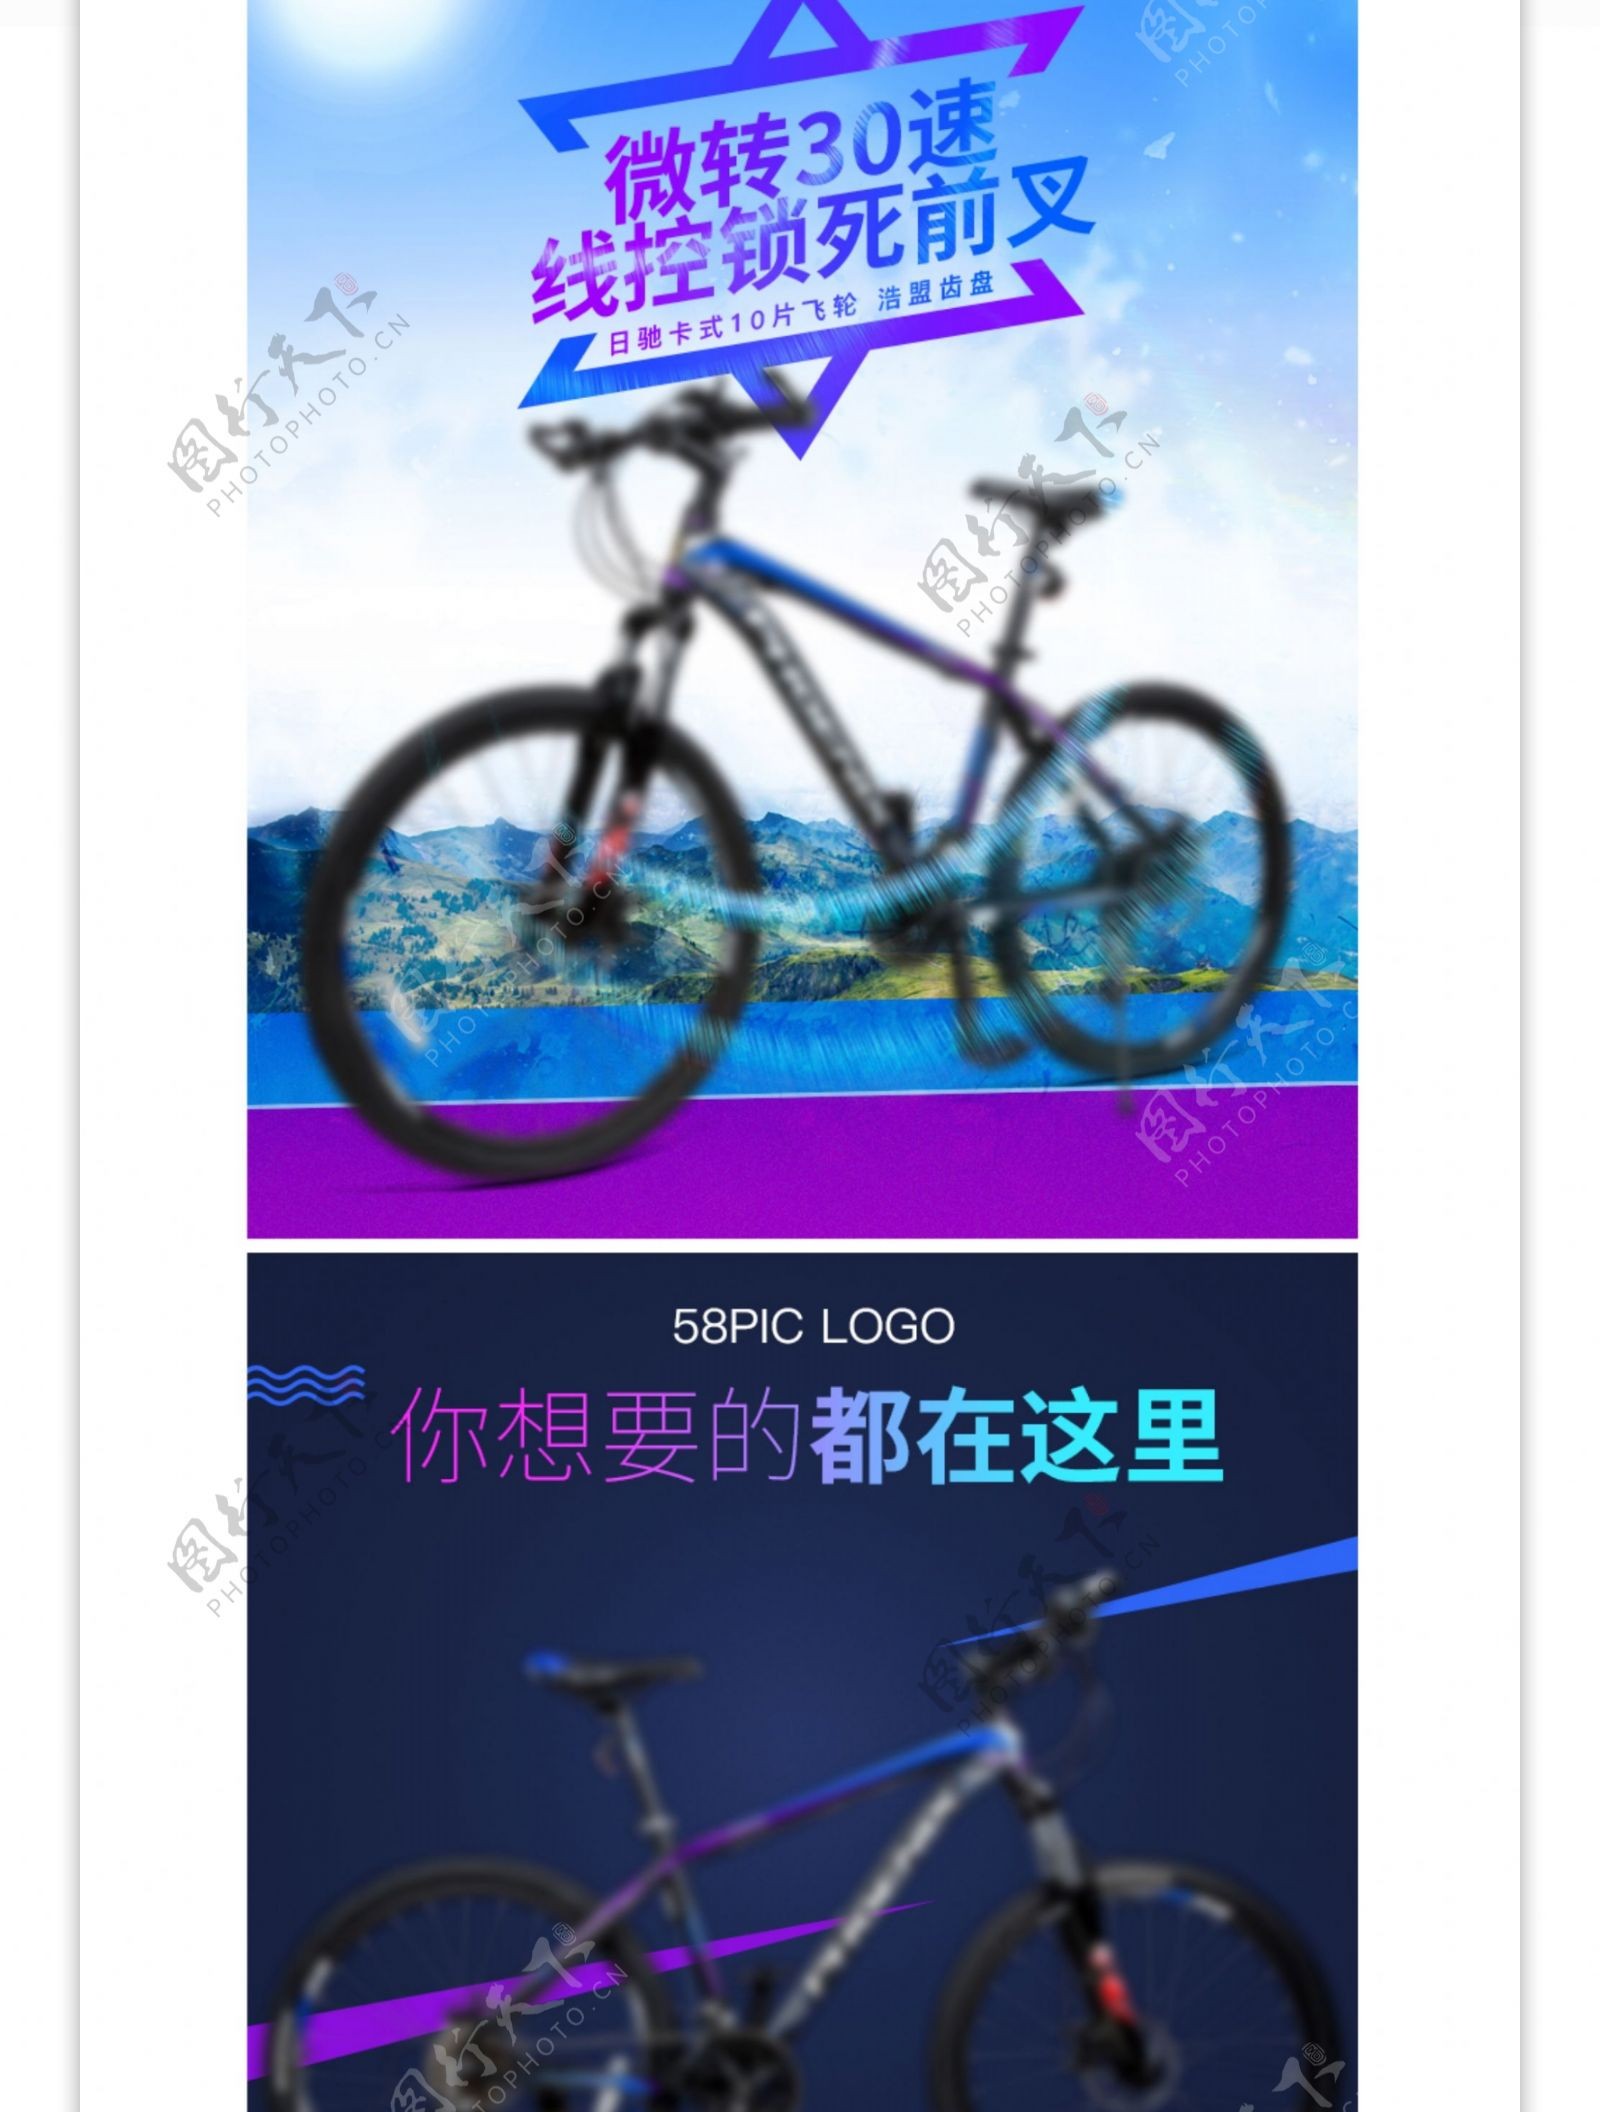 淘宝蓝紫色运动山地自行车详情PSD模板